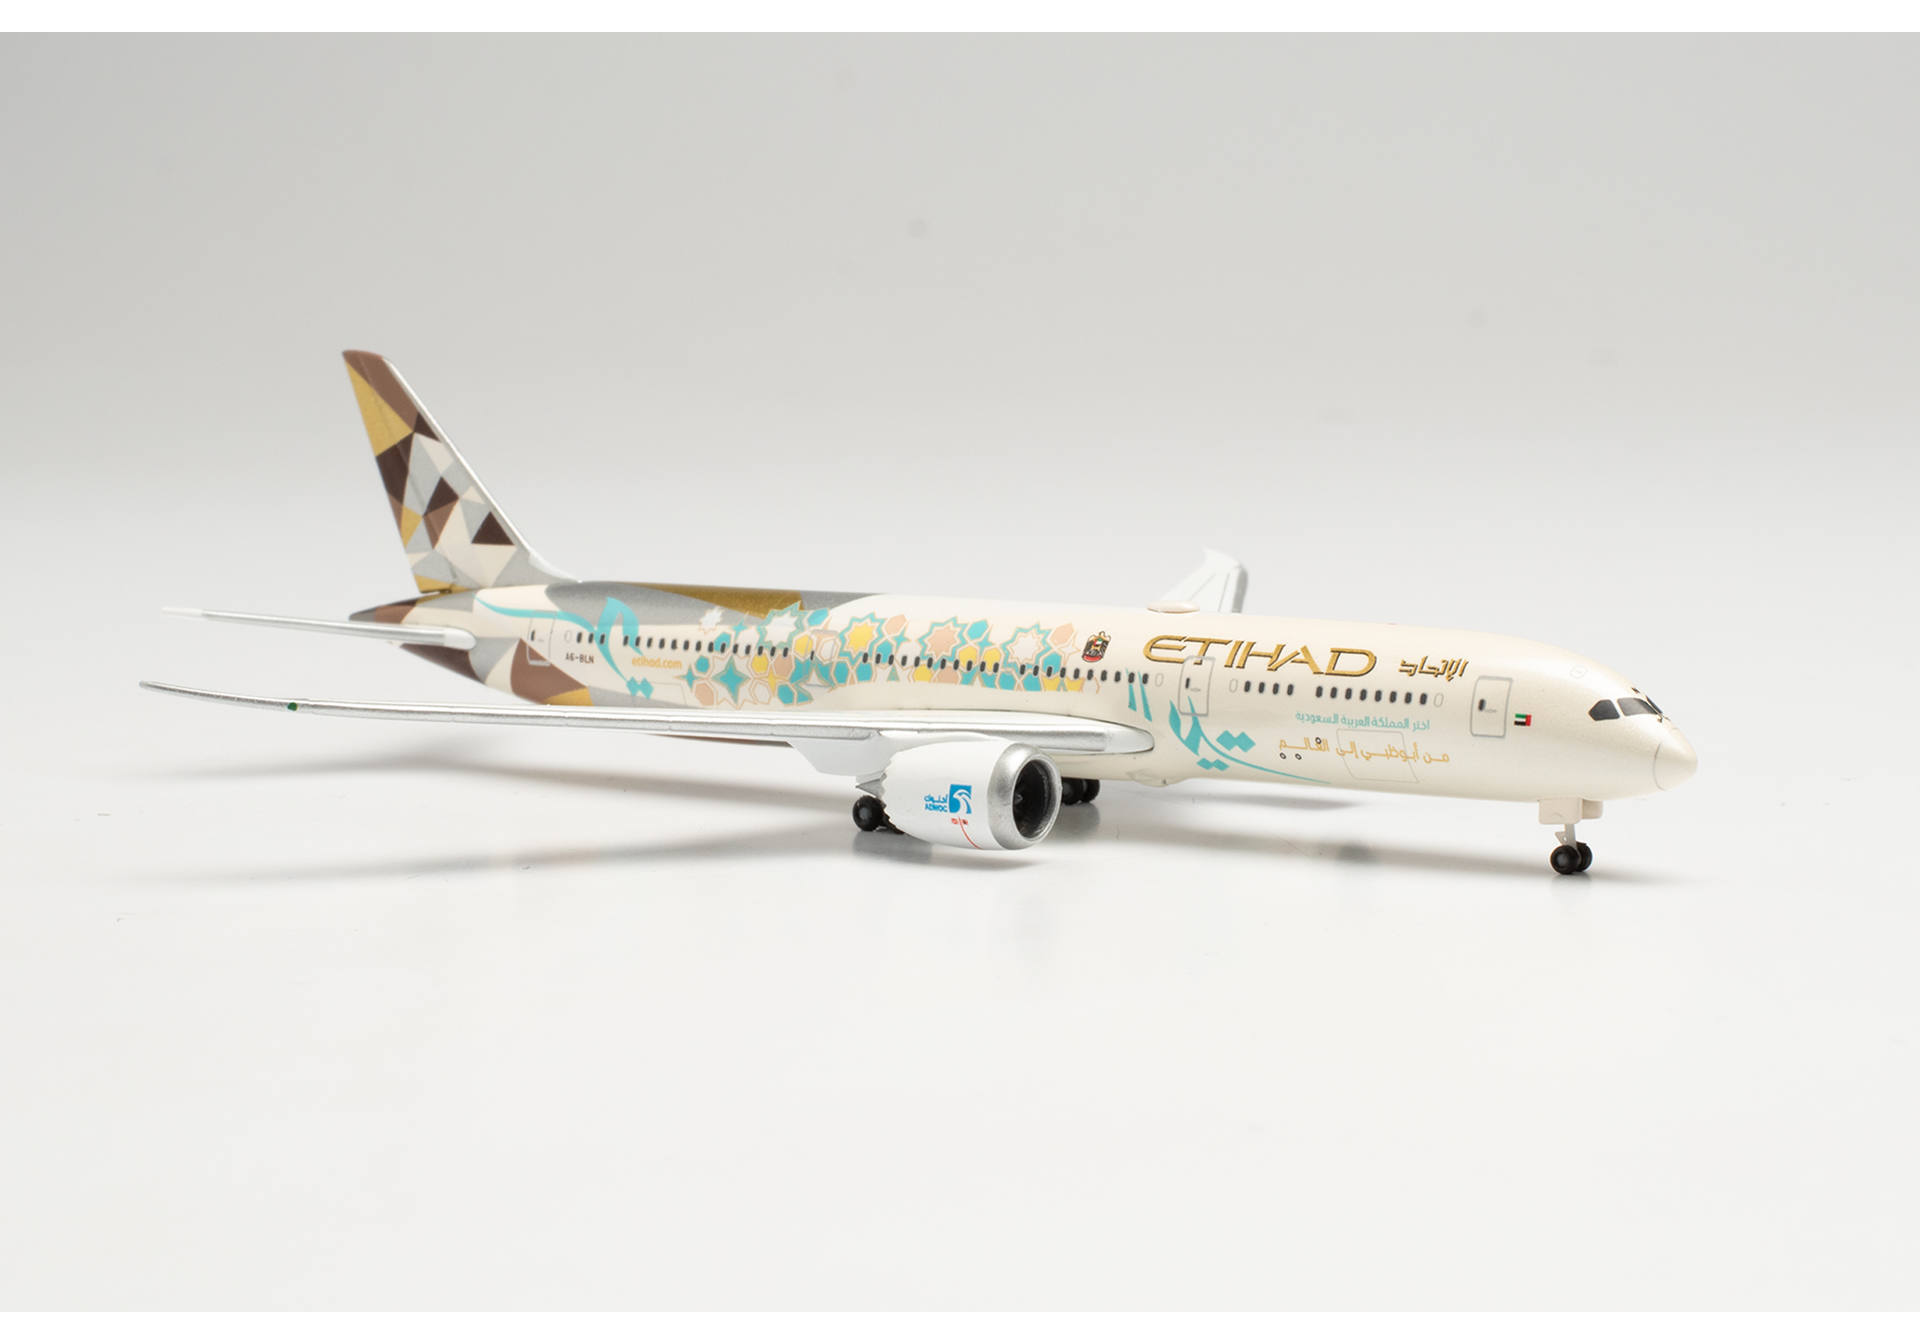  ETIHAD AIRWAYS BOEING 787-9 DREAMLINER CHOOSE SAUDI ARABIA  A6-BLN 1:500 535748. # 4 hobbyplus.ru